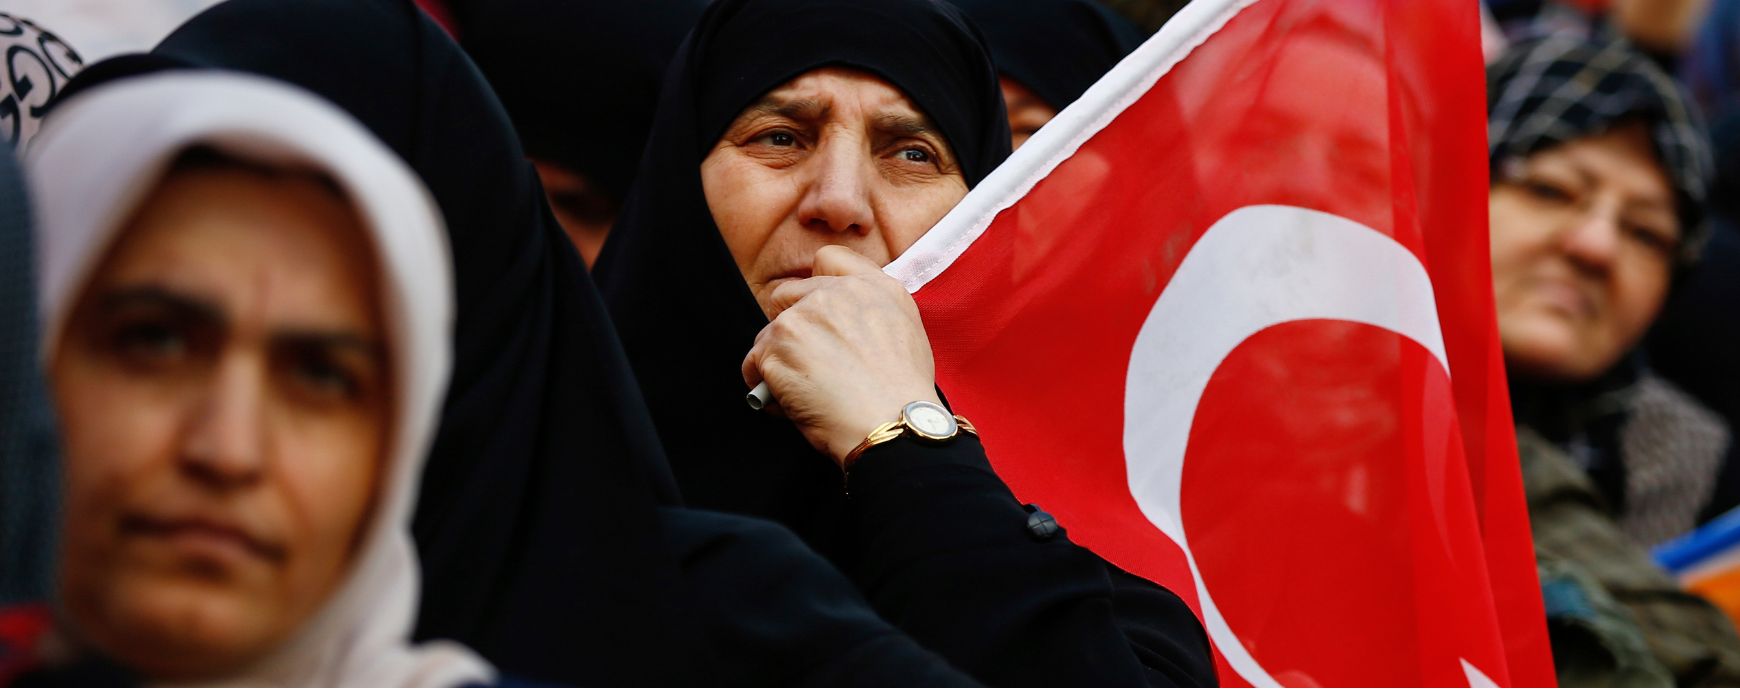 Εκλογές στην Τουρκία: Λιγοστές οι γυναίκες στην πολιτική – Τα εμπόδια και οι «τρικλοποδιές» του συστήματος